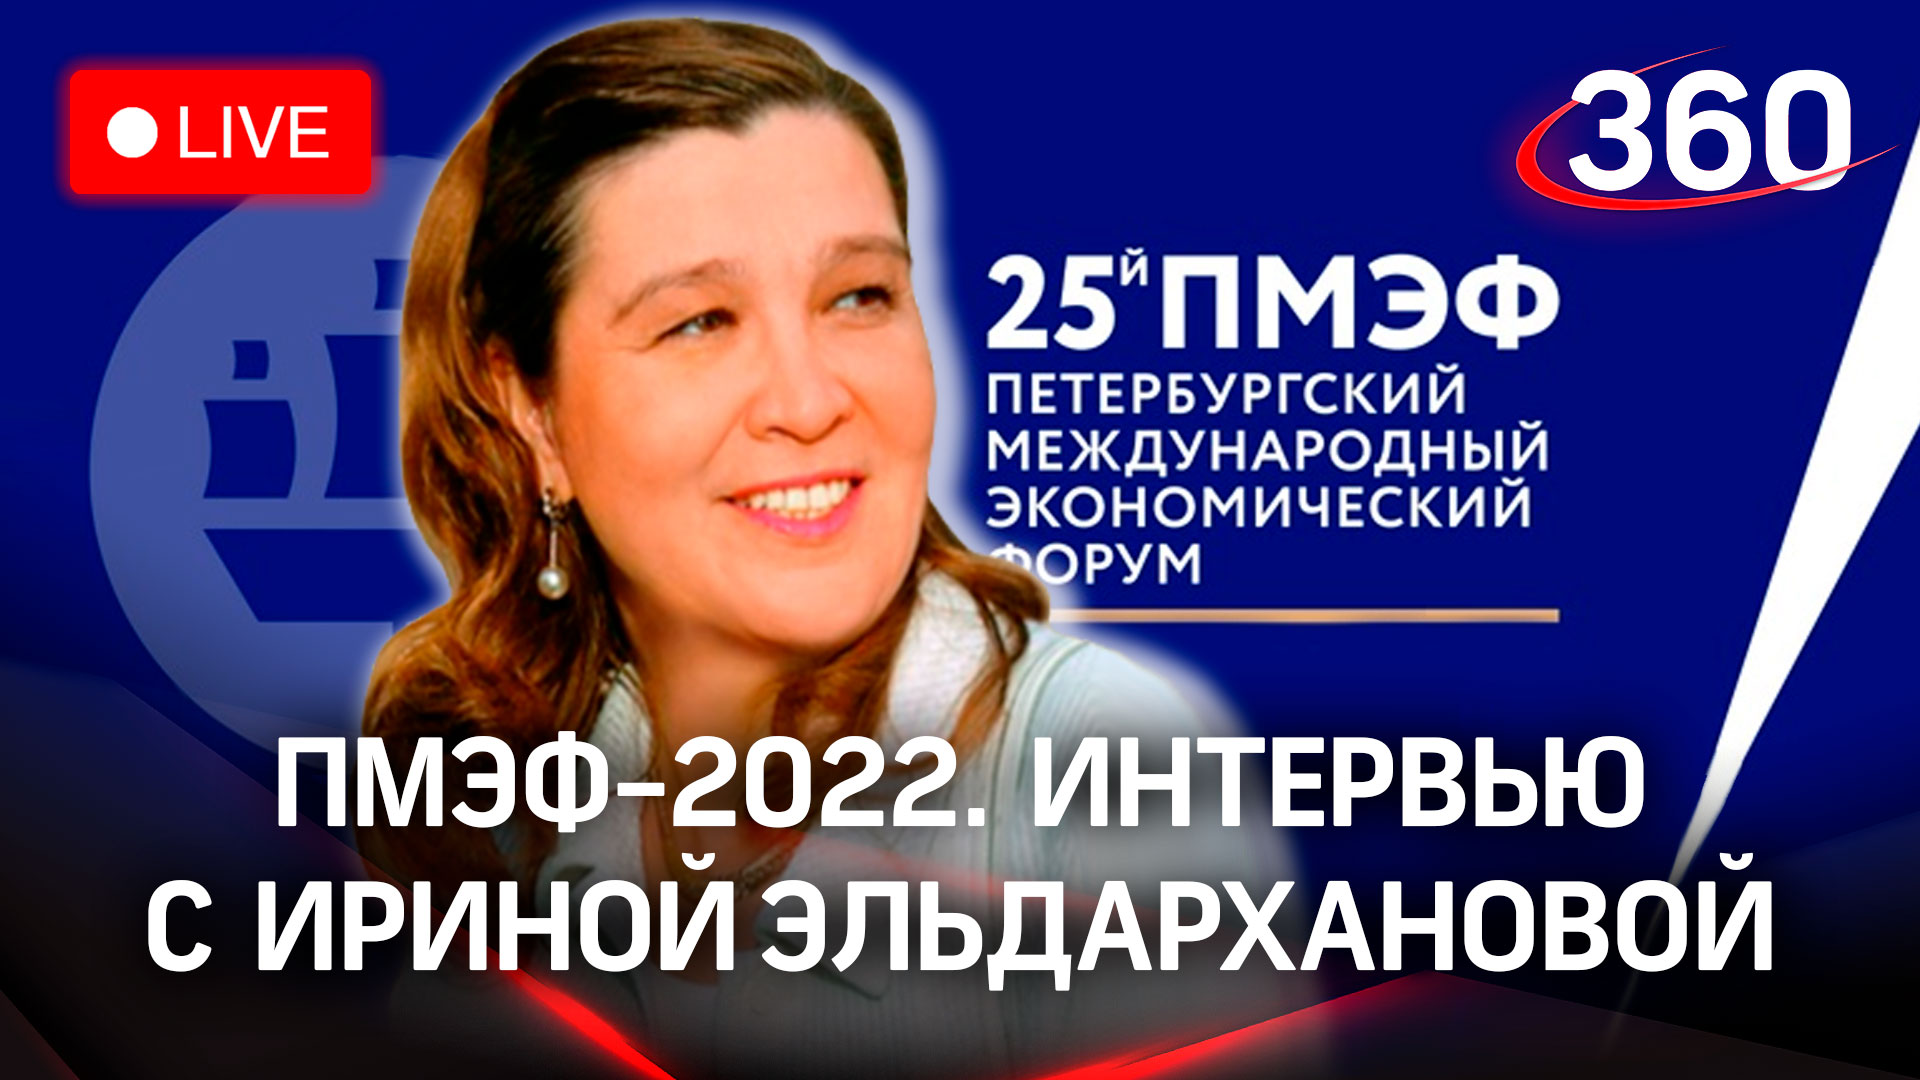 ПМЭФ-2022: интервью с Ириной Эльдархановой, председателем совета директоров компании «Конфаэль»